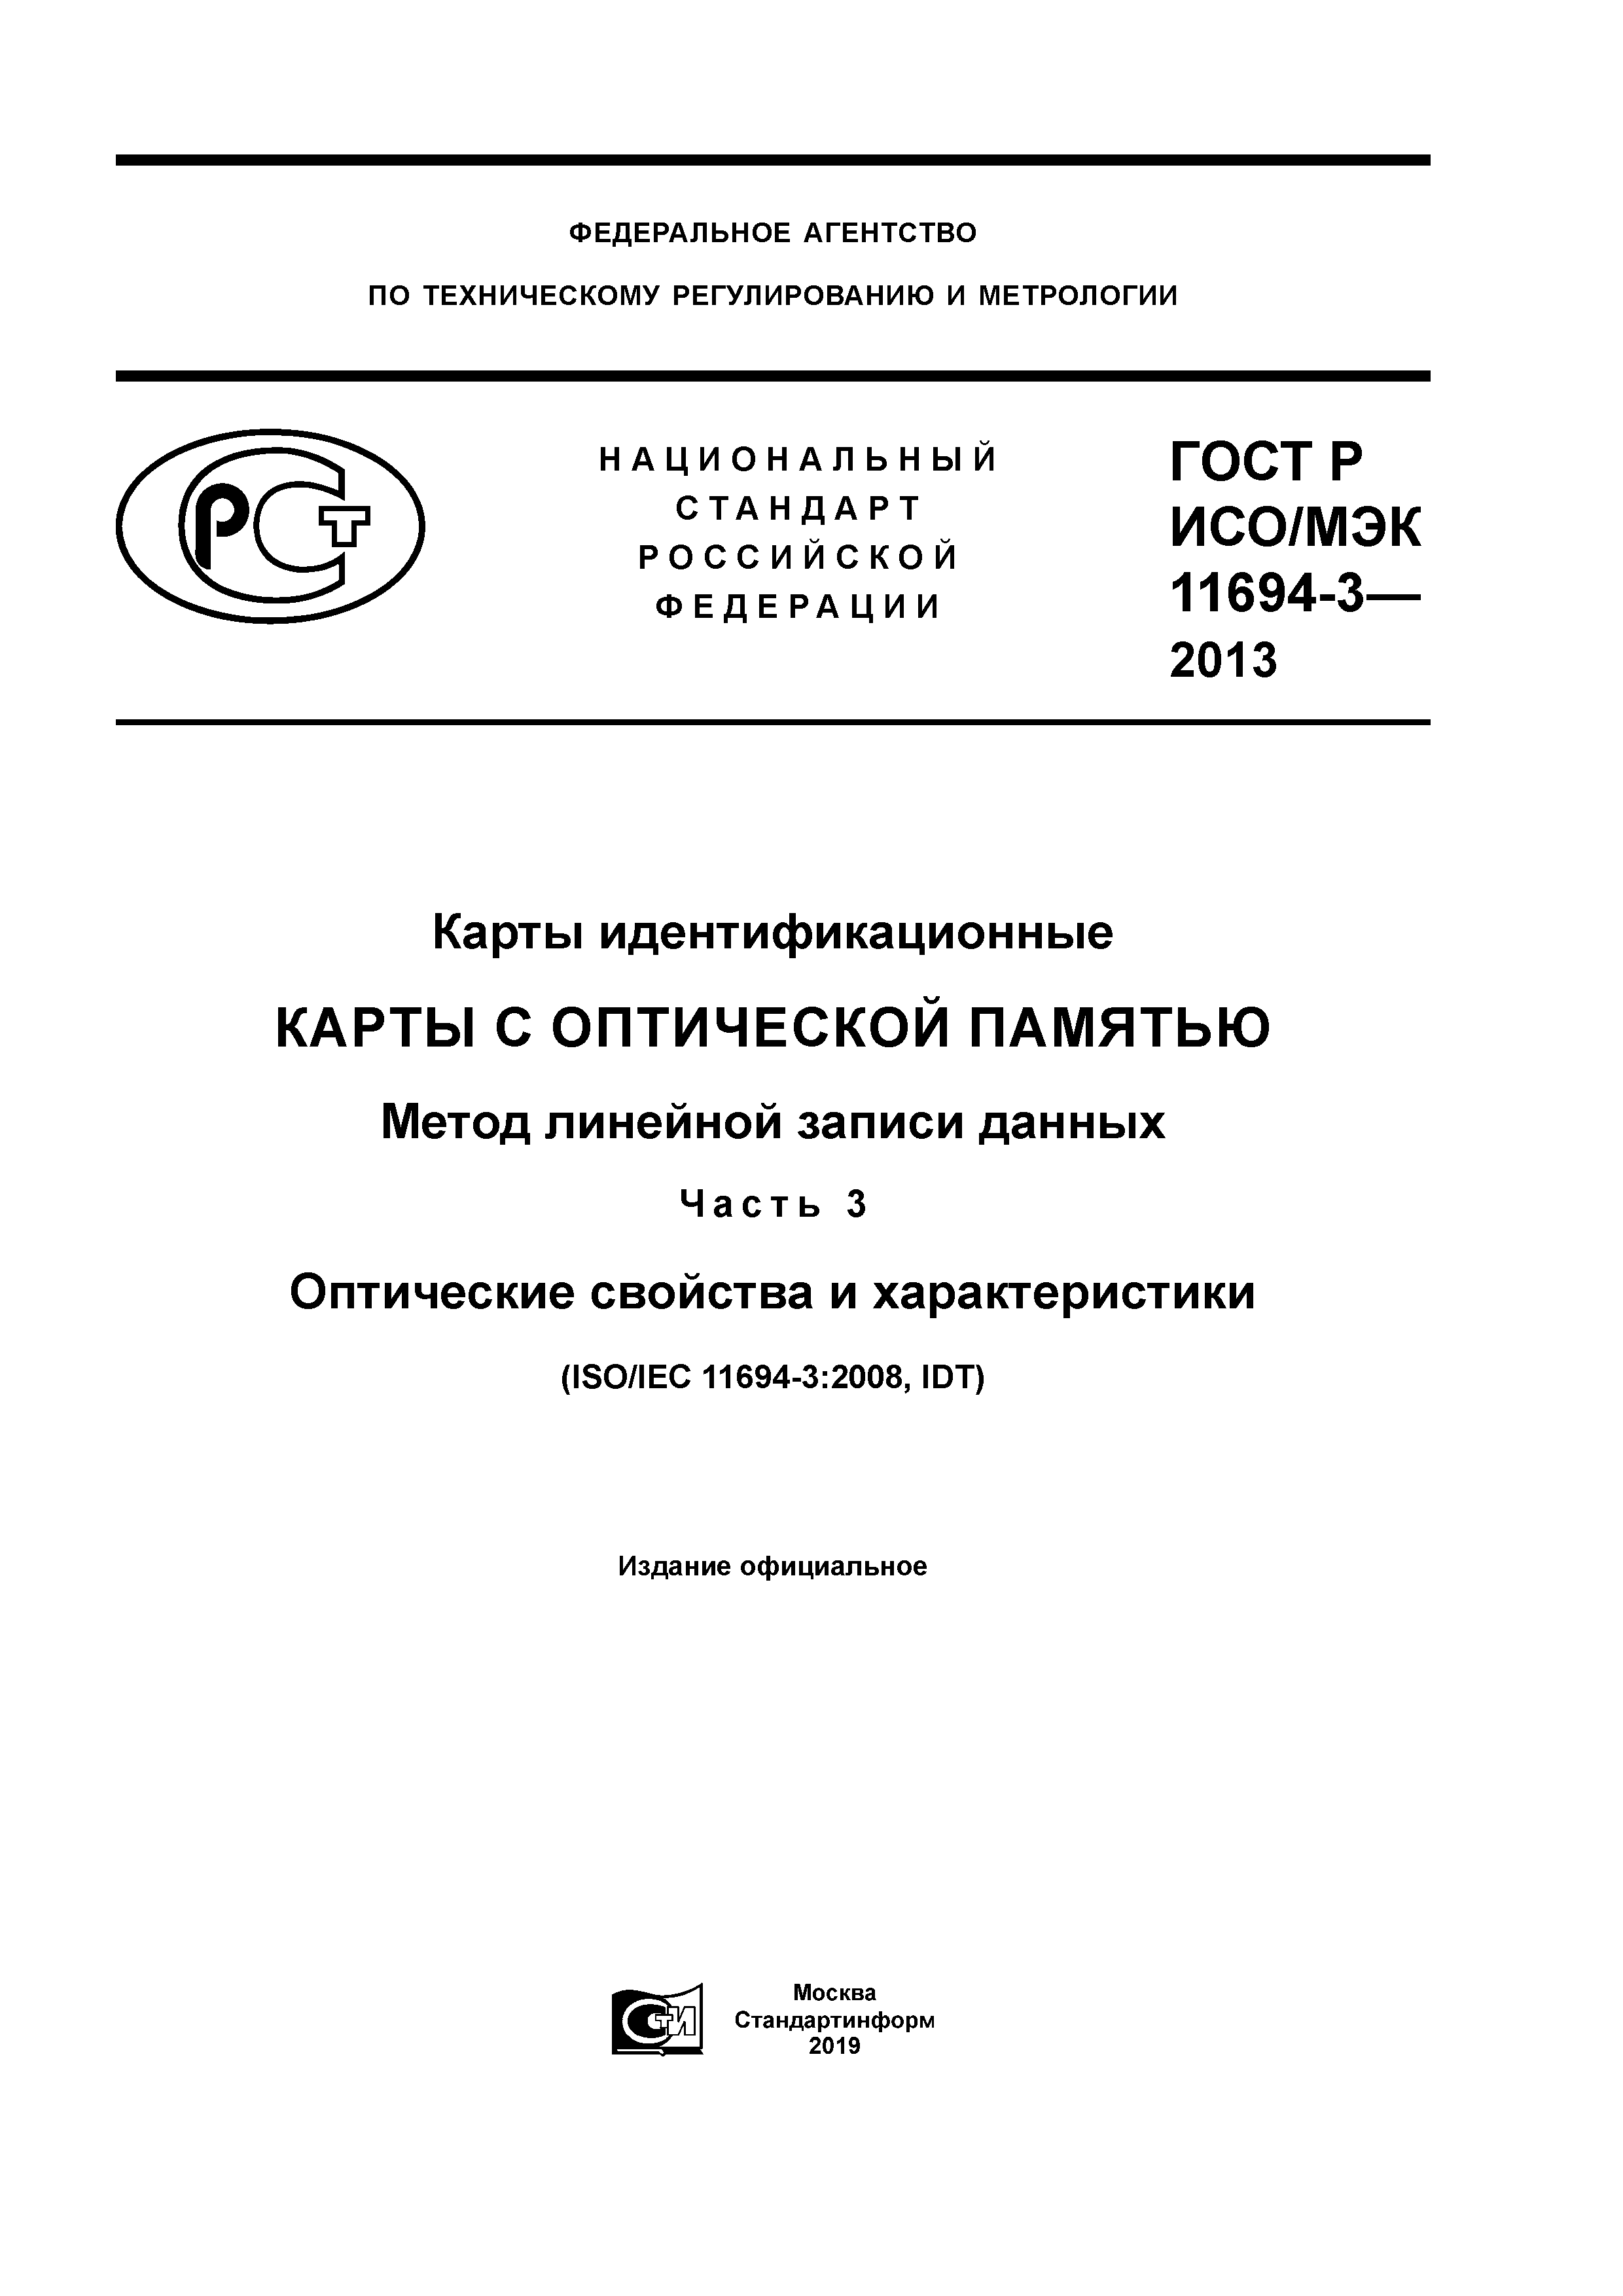 ГОСТ Р ИСО/МЭК 11694-3-2013